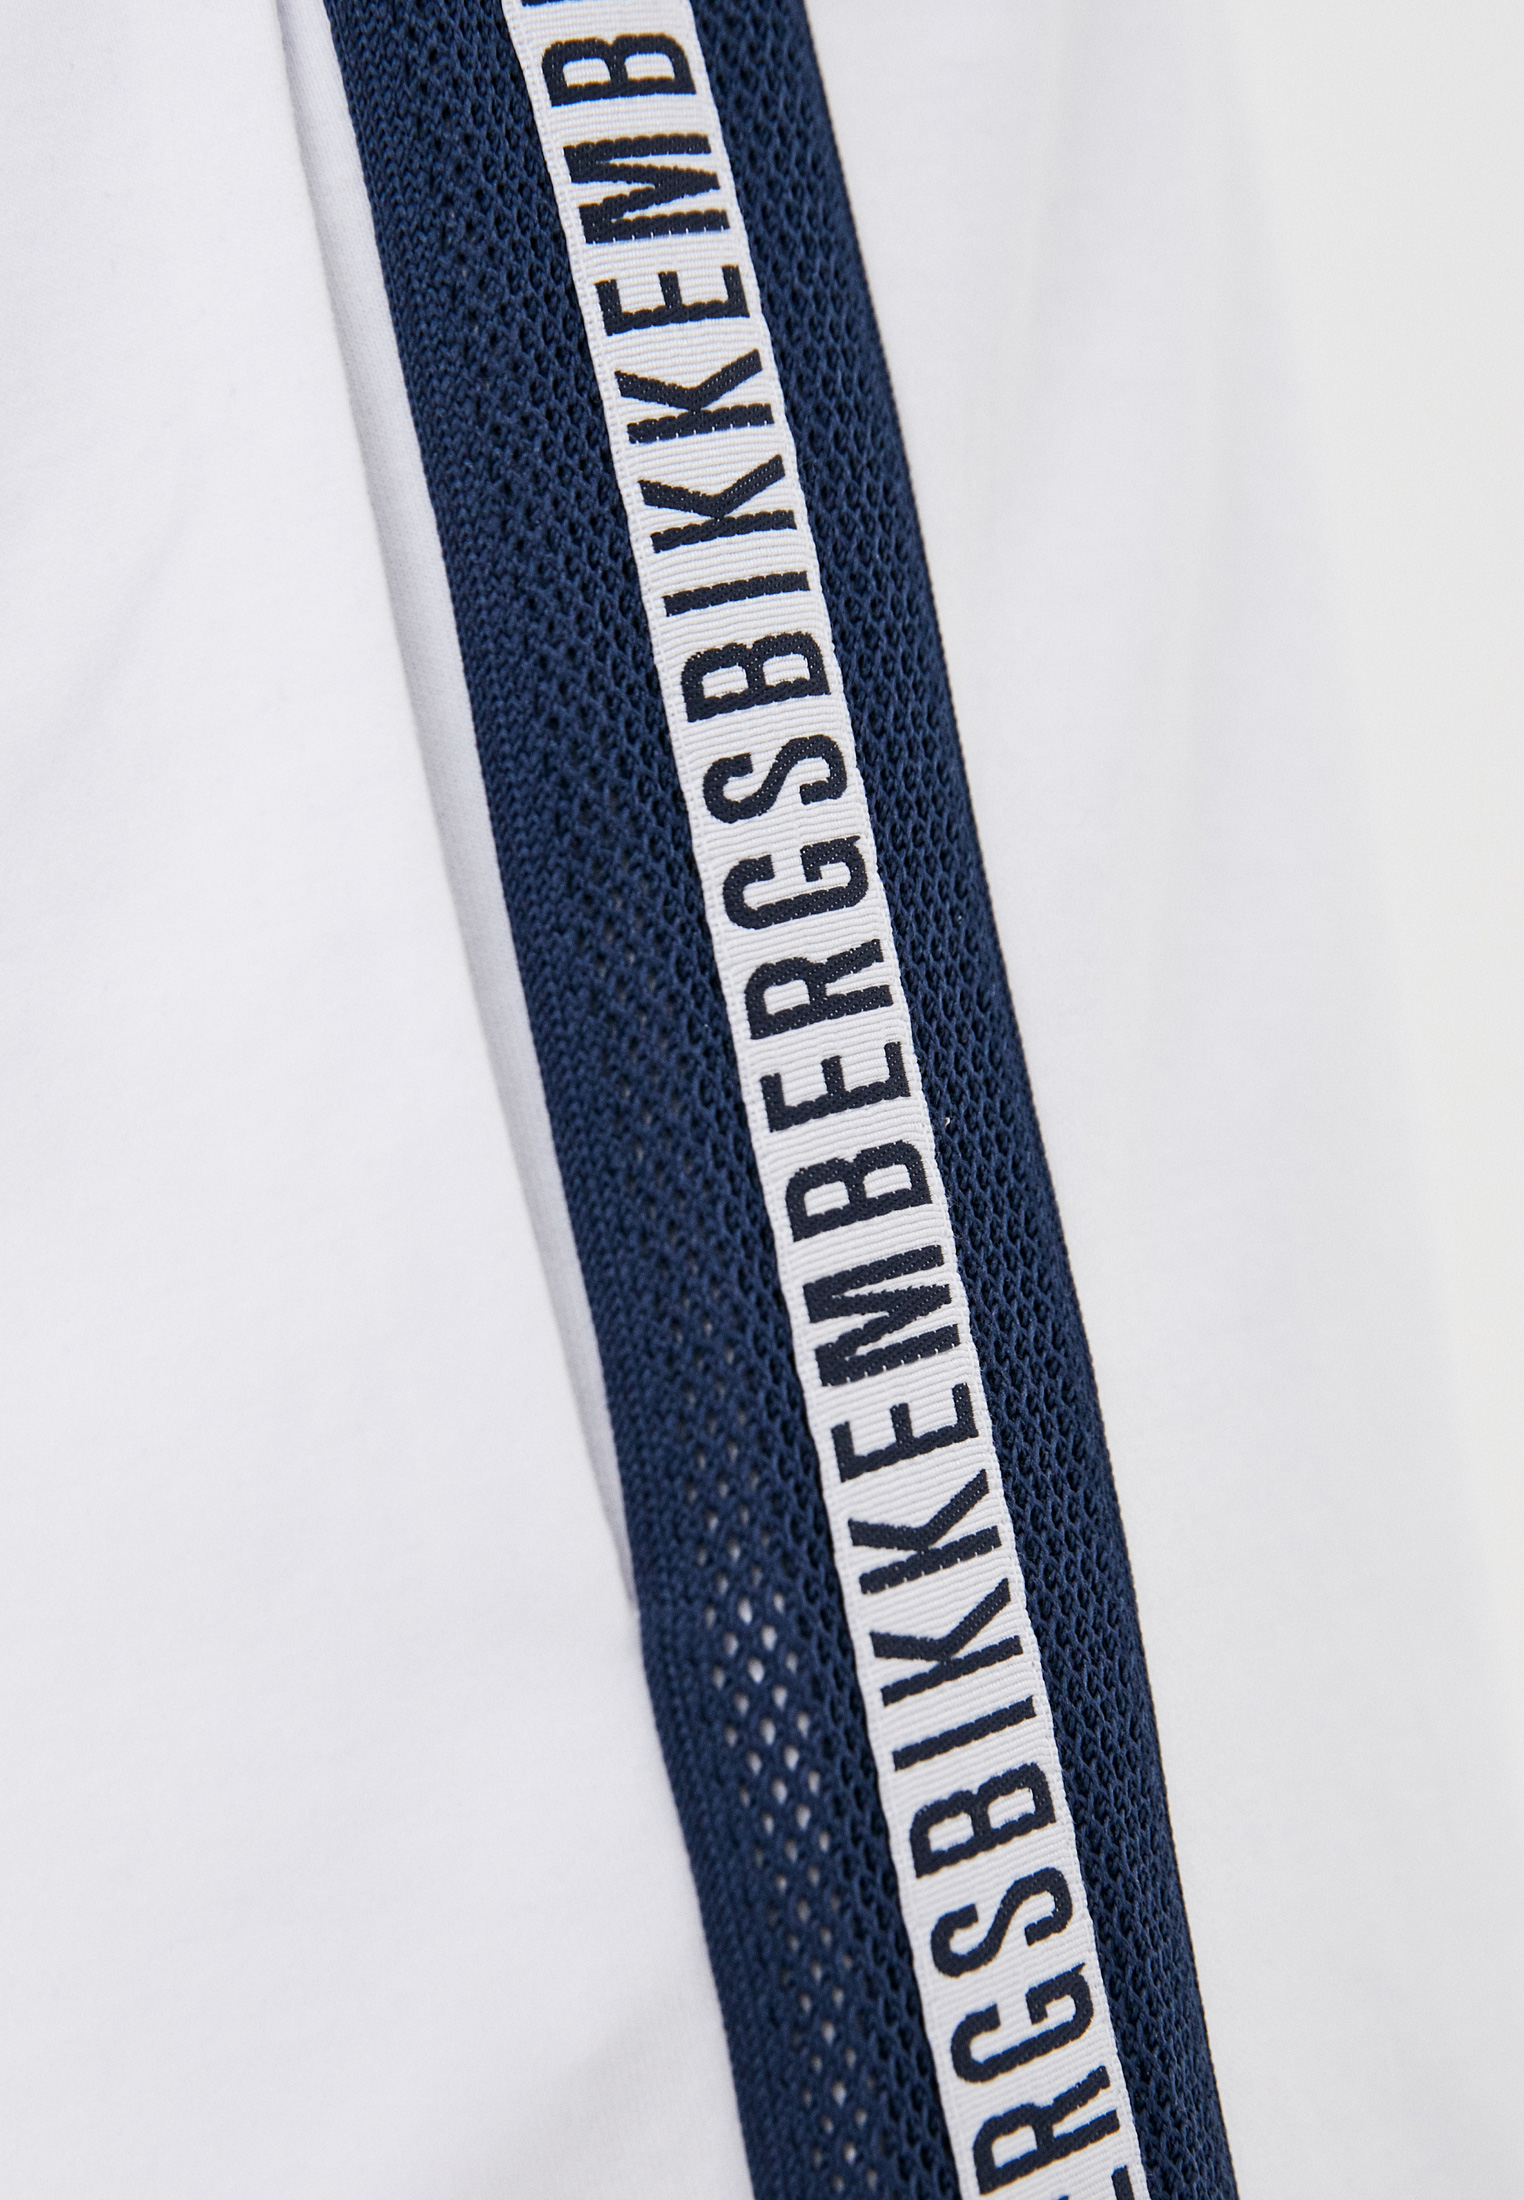 Мужские спортивные брюки Bikkembergs (Биккембергс) C 1 173 80 M 4272: изображение 5